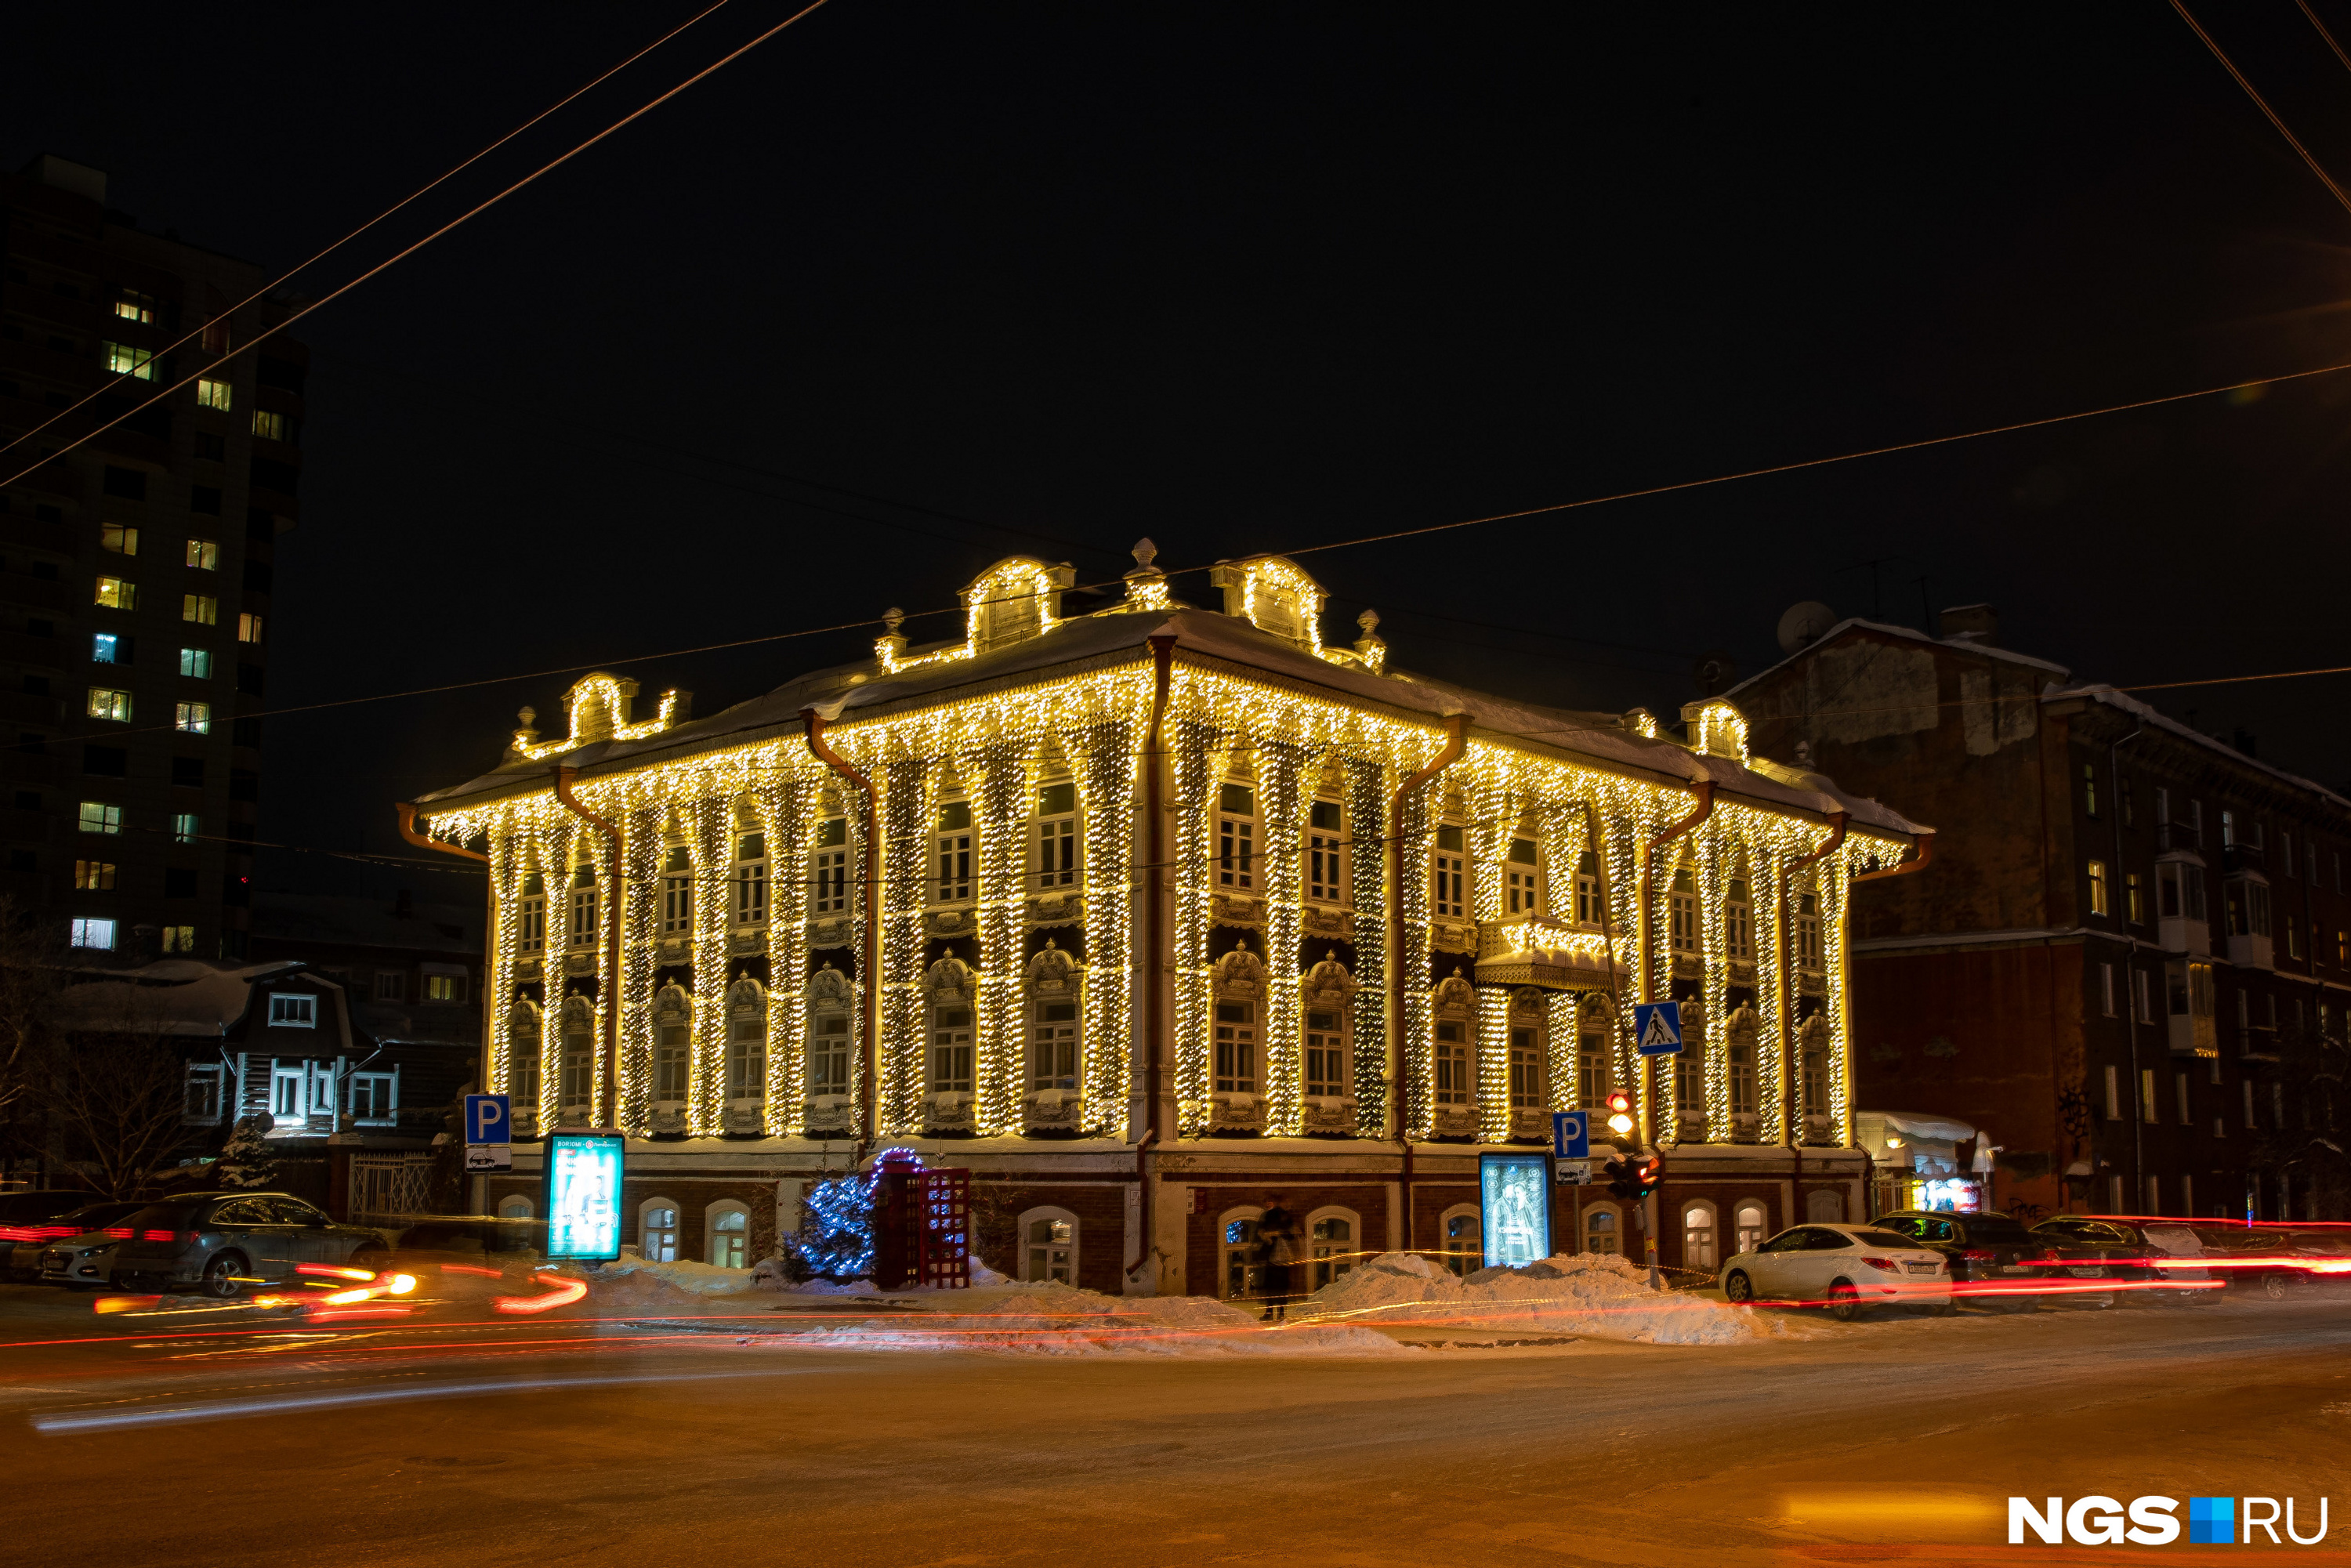 Исторический дом на улице Урицкого, где раньше была женская гимназия, часто попадает на зимние фотографии новосибирцев